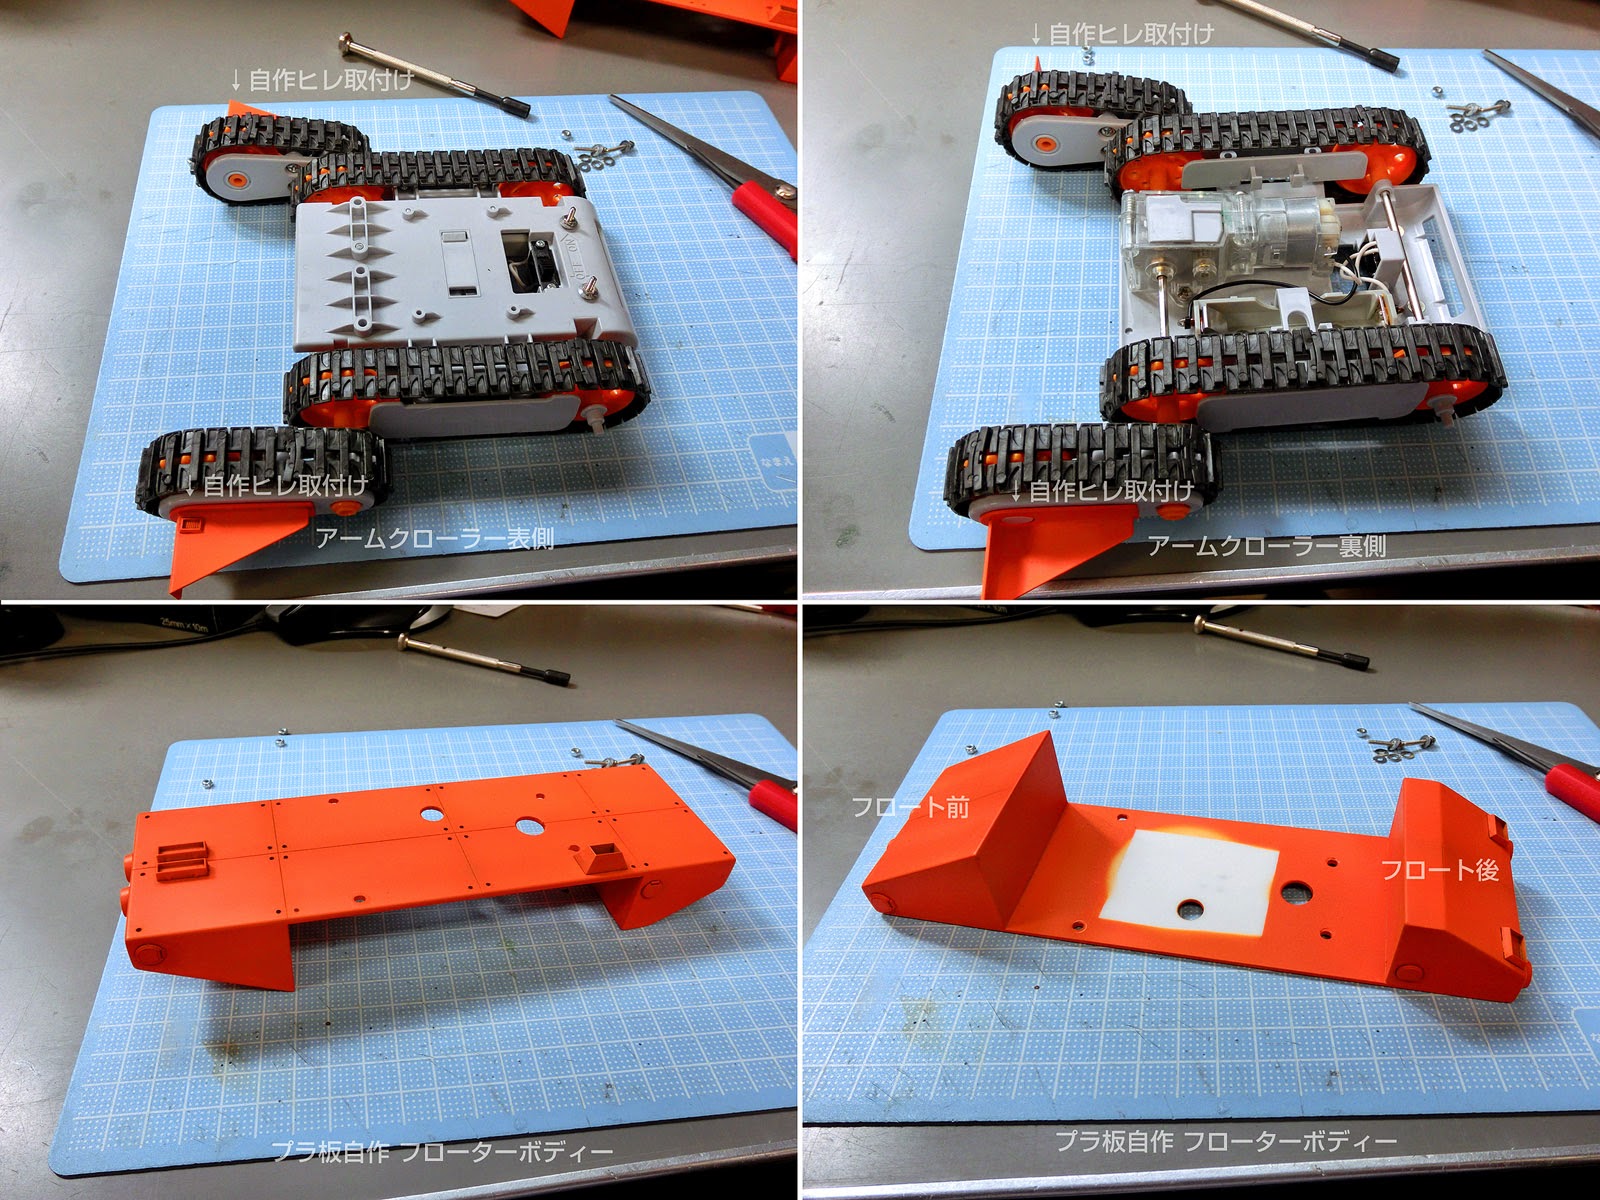 Kumpulan Proyek Robot Modifikasi Arm Crawler Robot Kit Tamiya